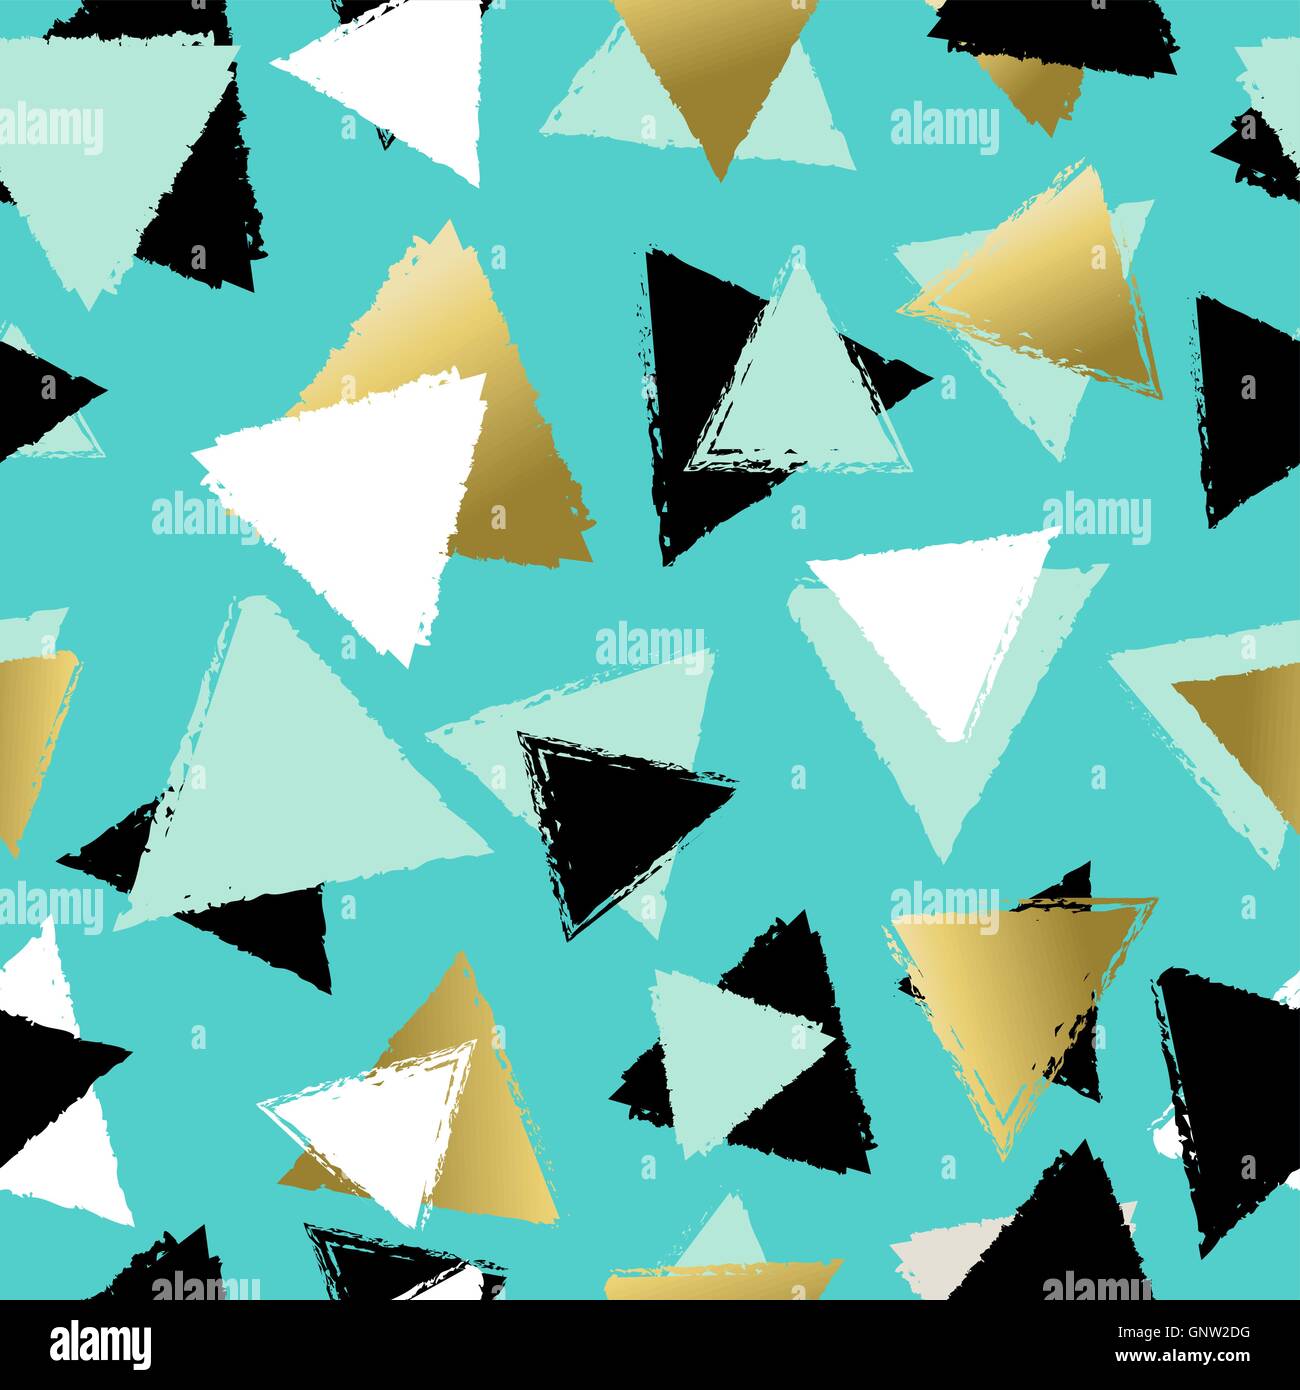 Modèle transparent avec des formes géométriques de base en triangle dessiné à la main de style et de couleur or. Vecteur EPS10. Illustration de Vecteur